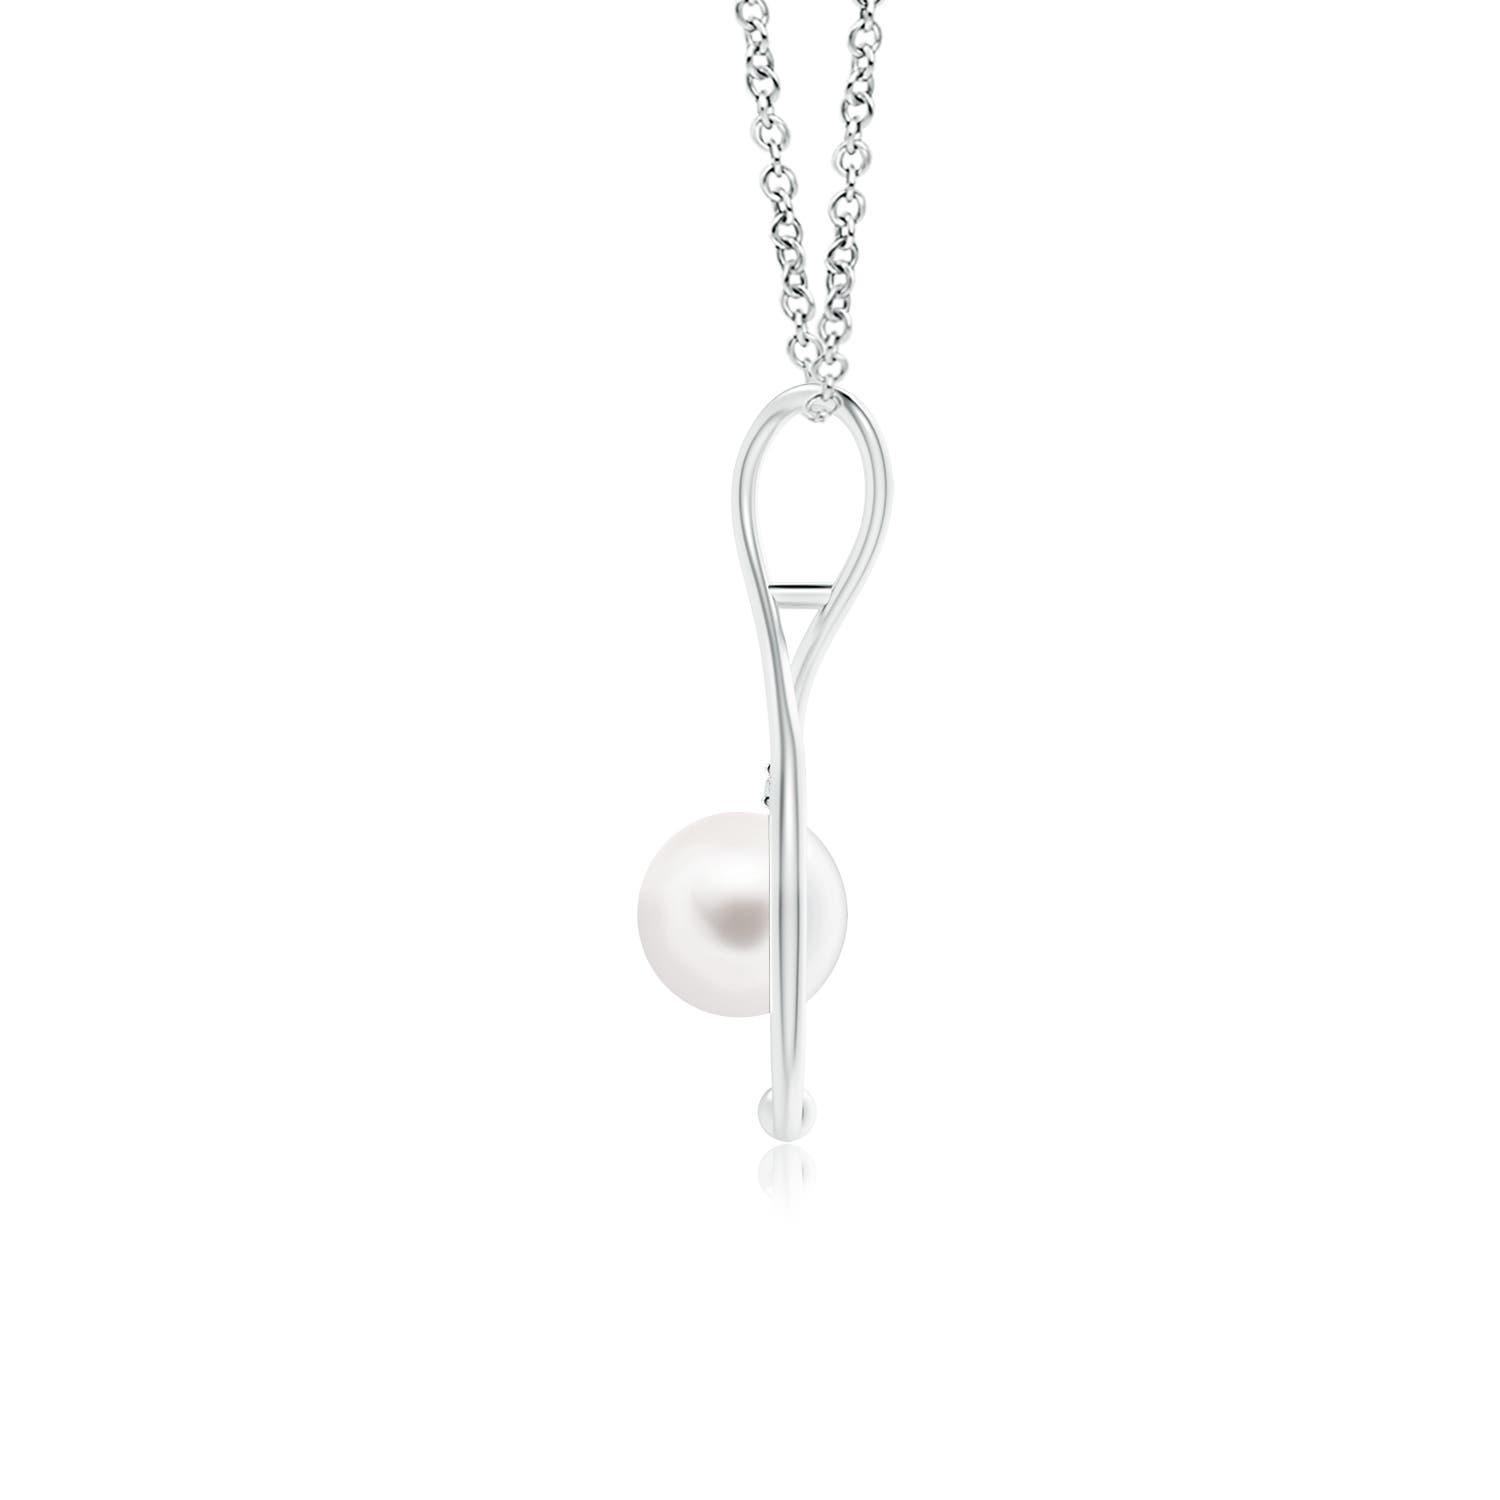 Classique moderne, ce collier infini en perles en or blanc 14 carats est une belle interprétation du populaire symbole de l'infini. La boucle à l'infini câline délicatement la perle de culture d'eau douce ronde pour évoquer un sentiment de